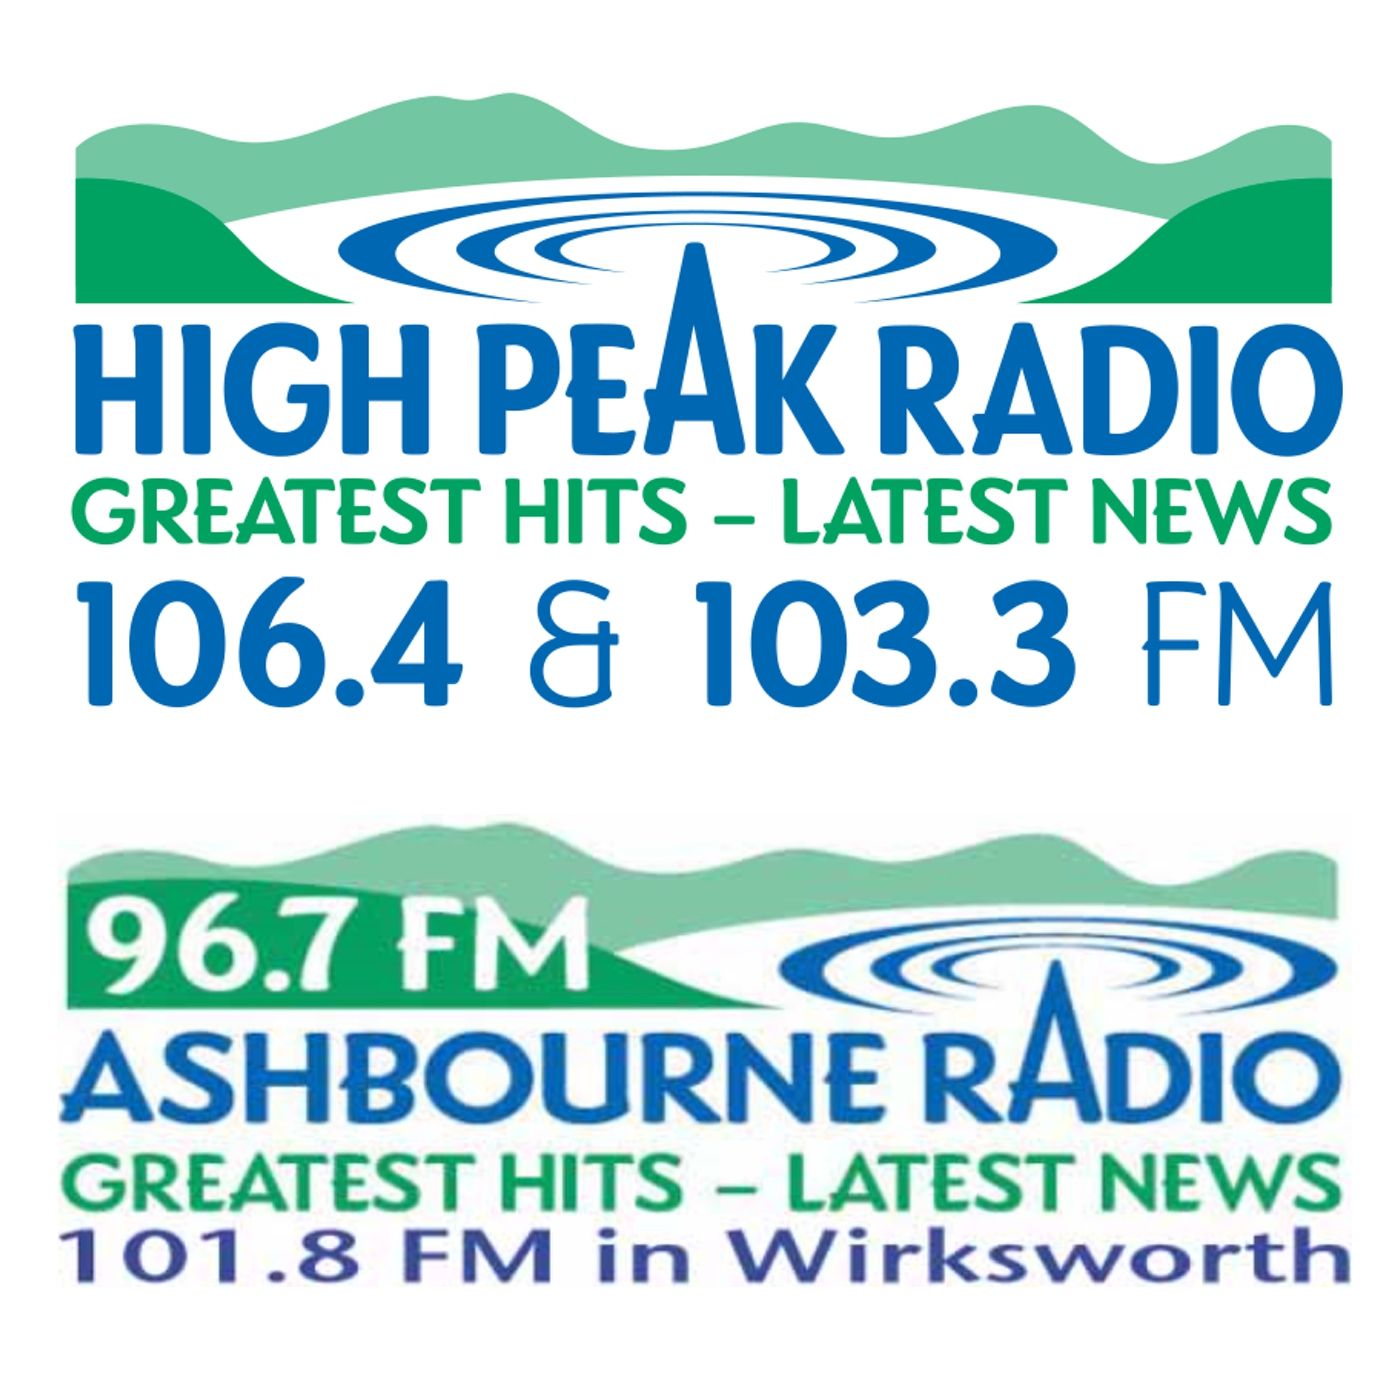 HighPeakRadioNews